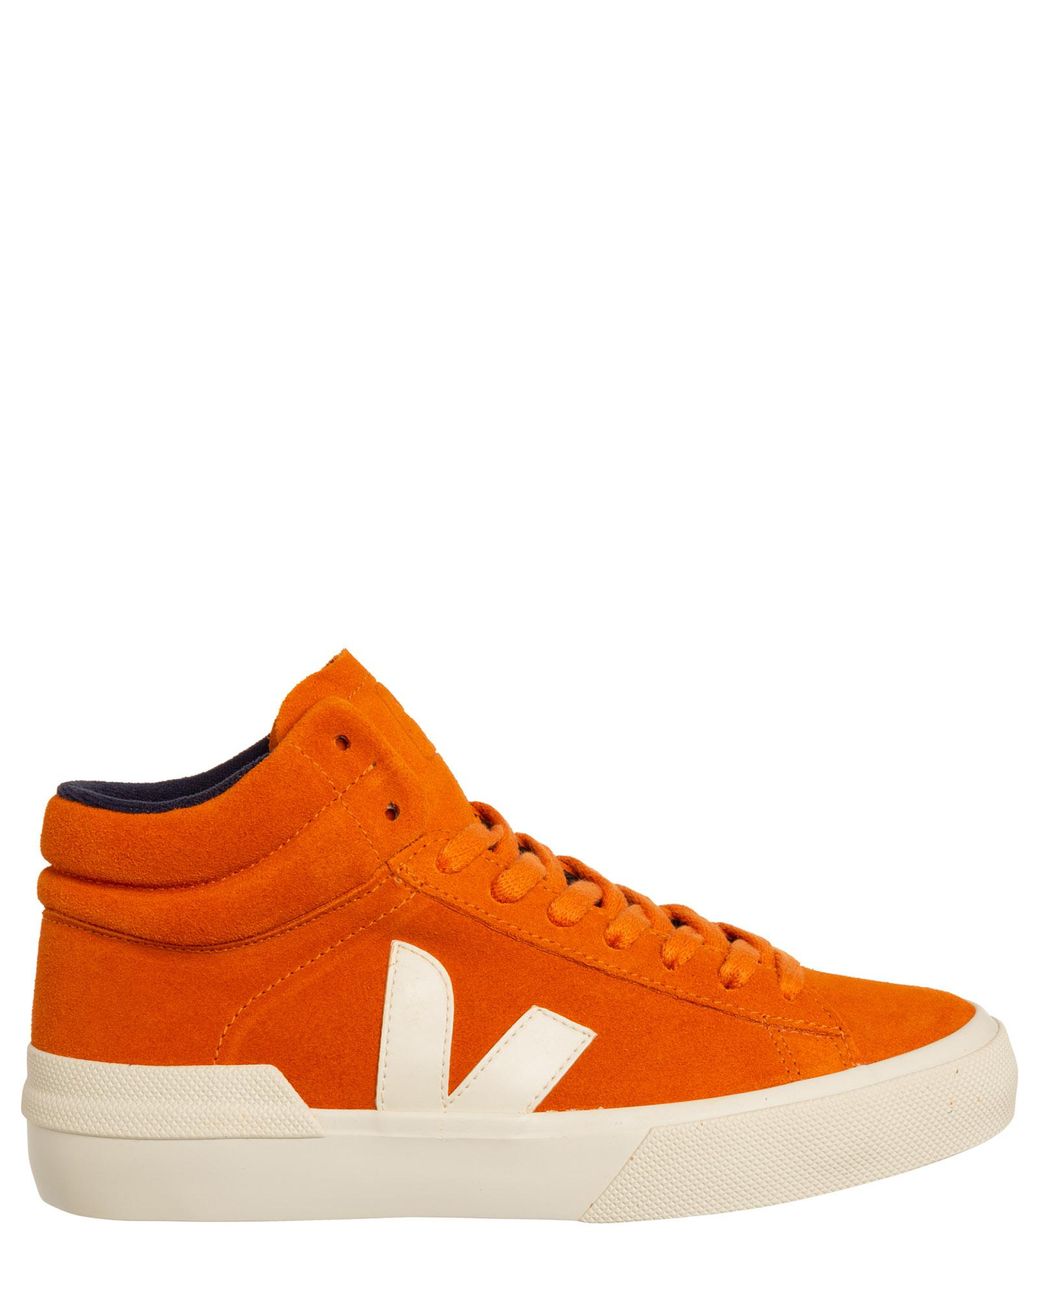 Veja Minotaur Sneakers in Orange | Lyst